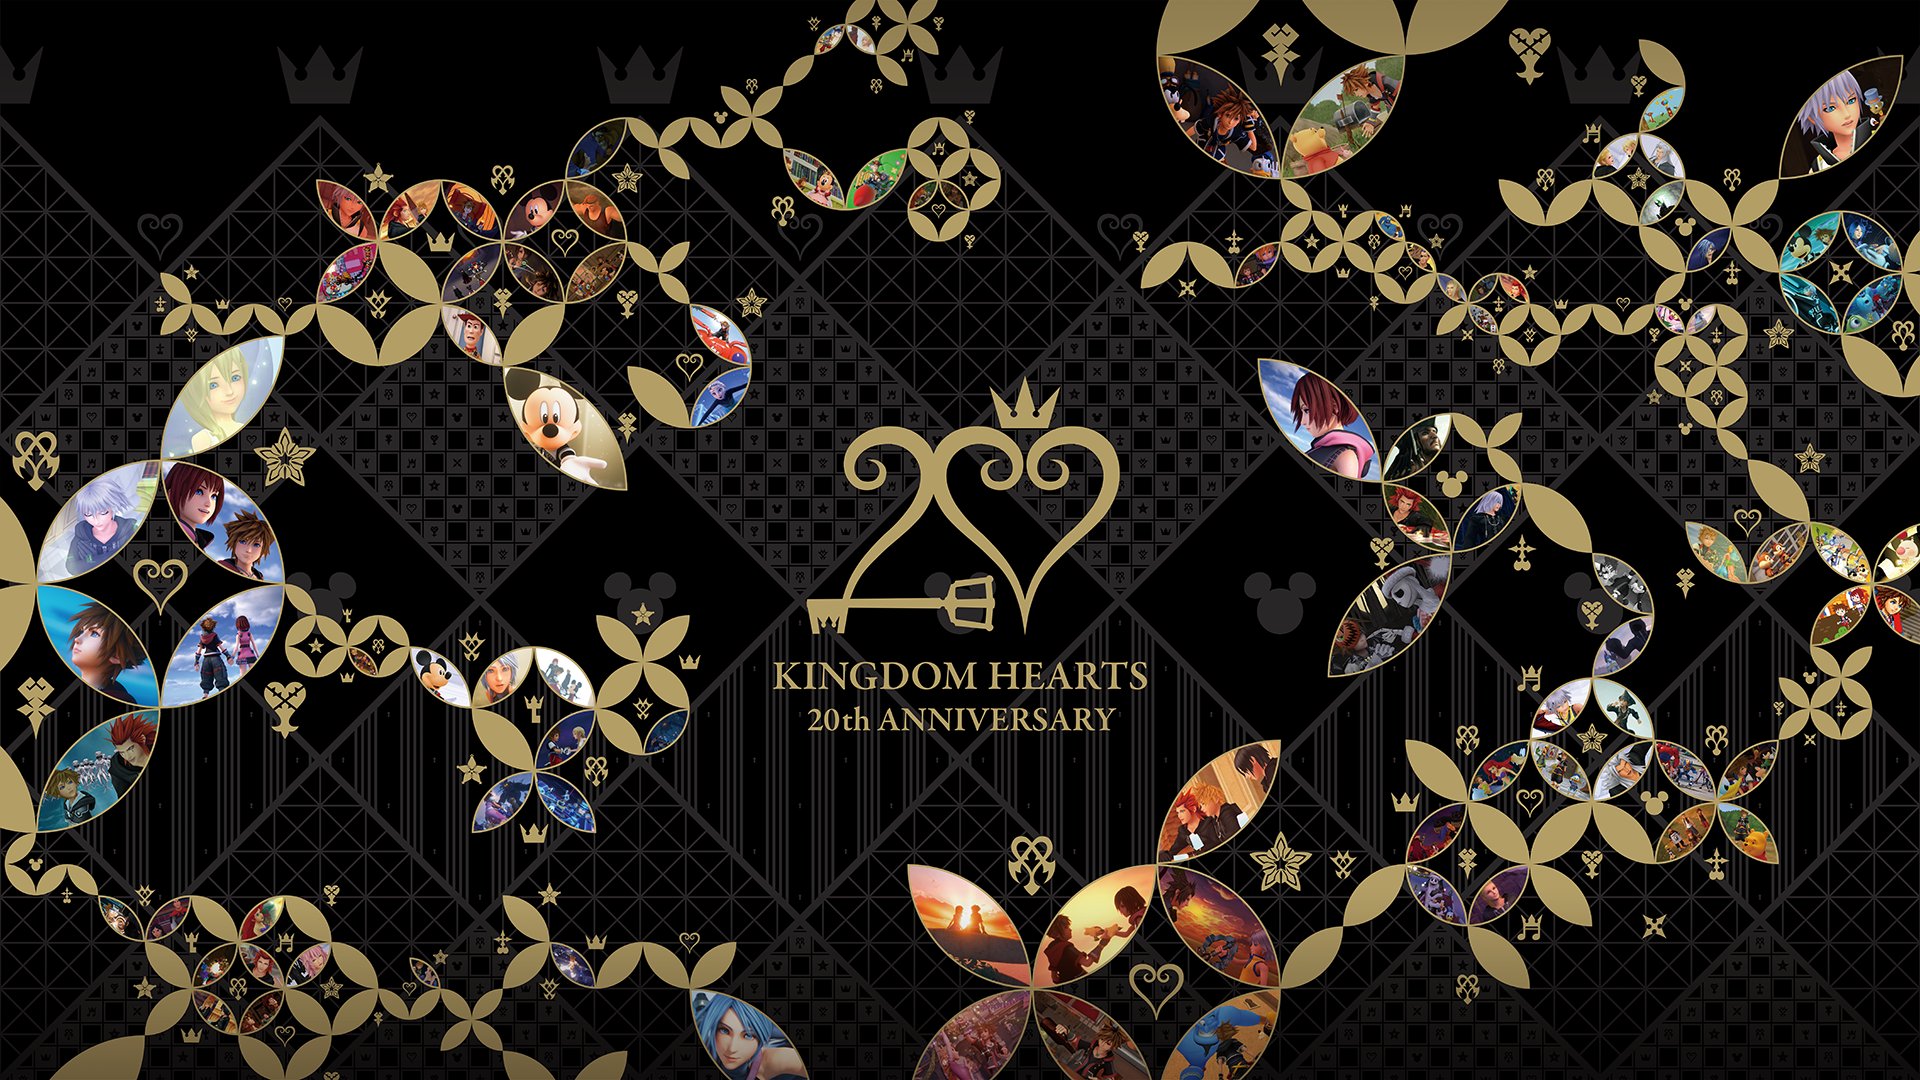 Square Enix ประกาศแผนฉลองครบรอบ 20 ปี Kingdom Hearts